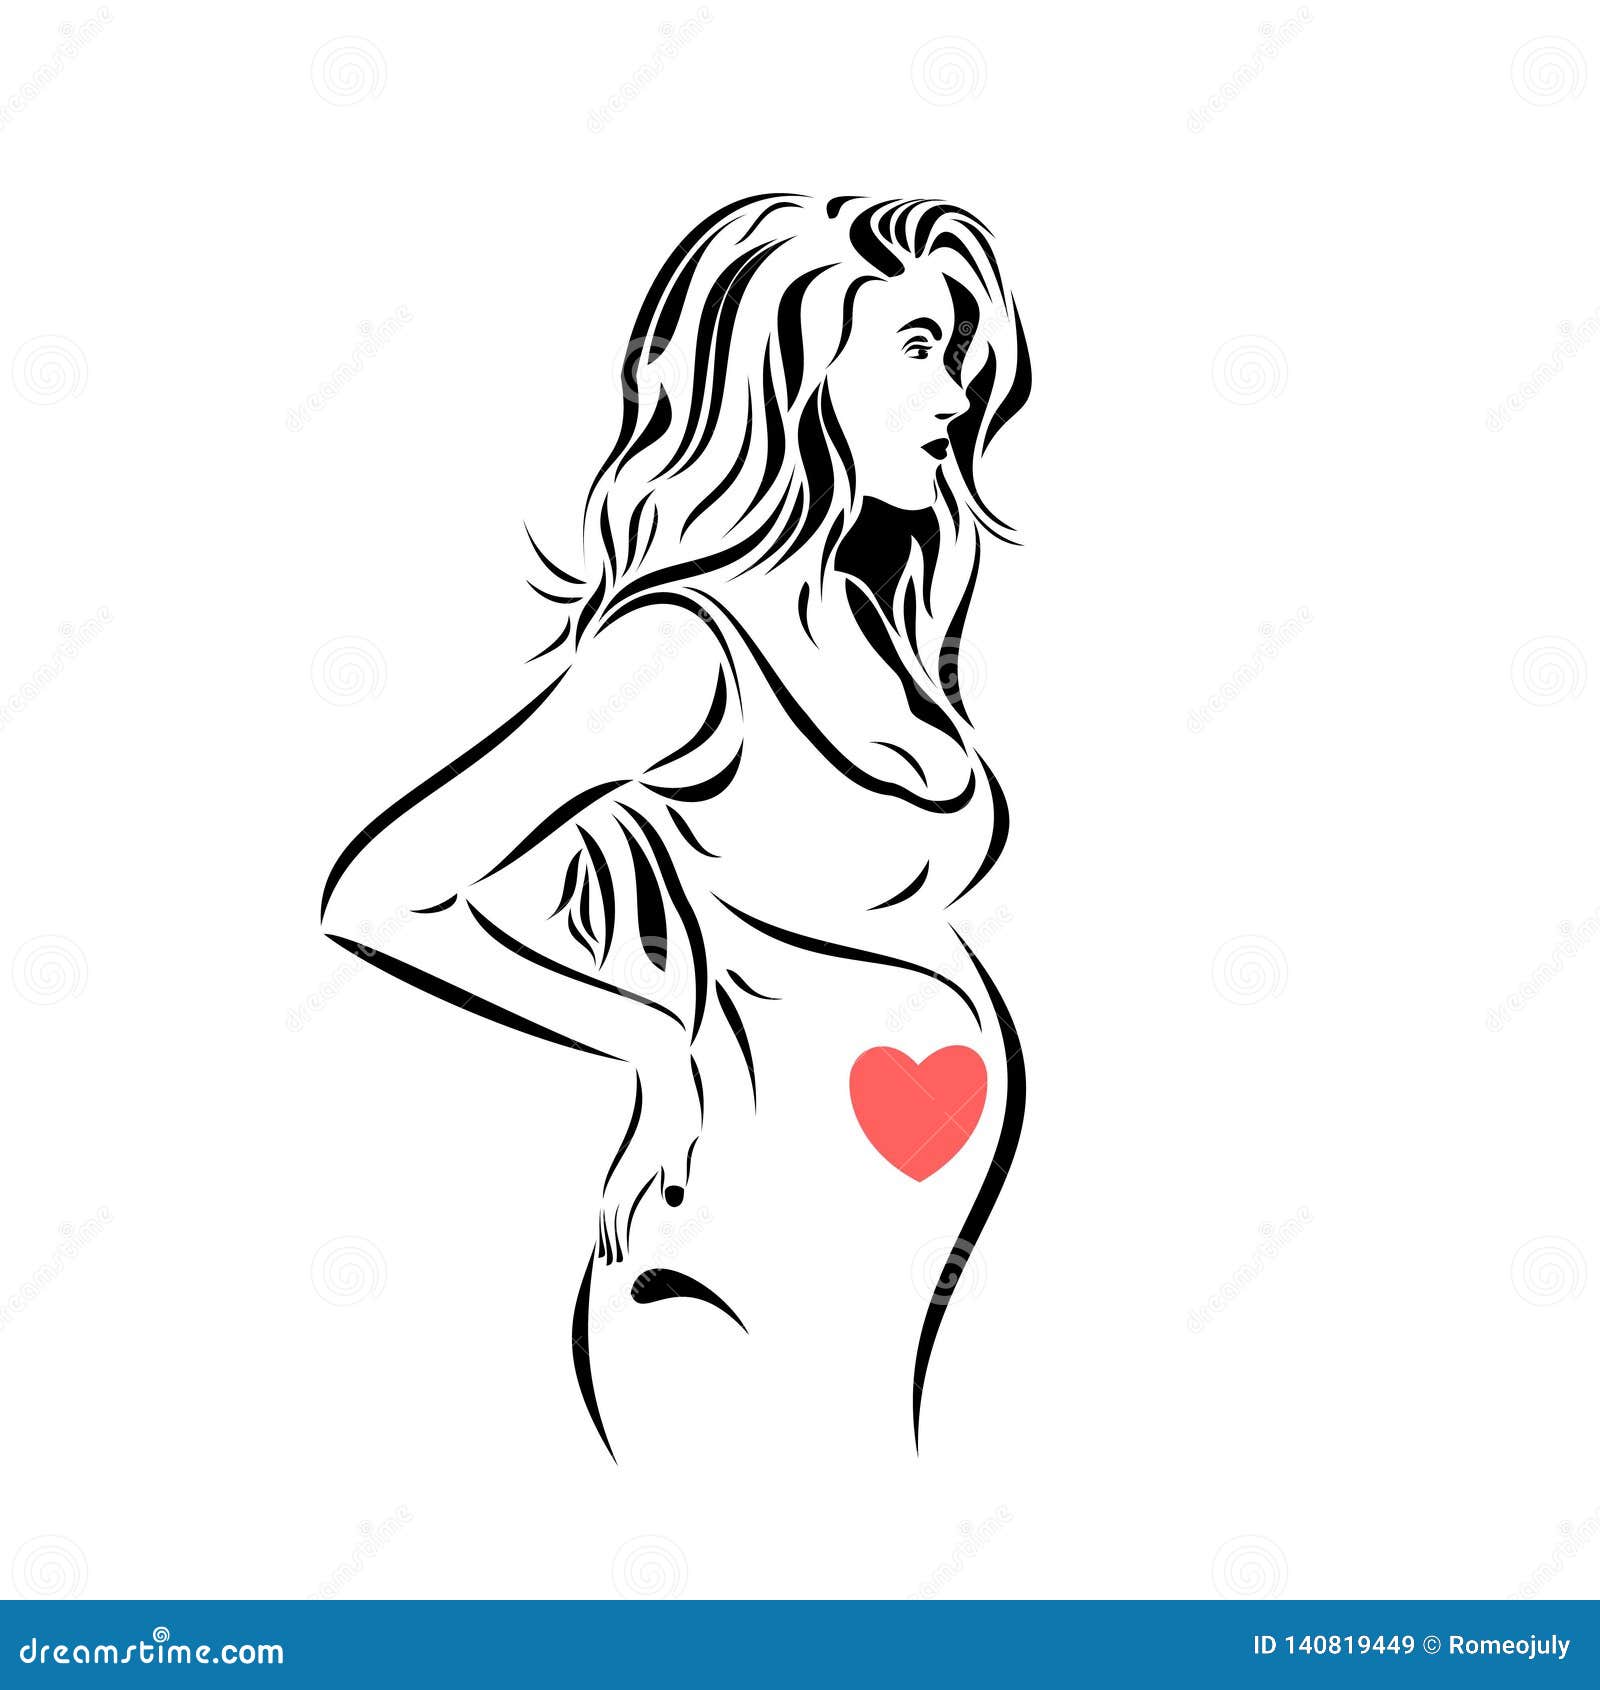 Pregnant women stock illustration. Illustration of center